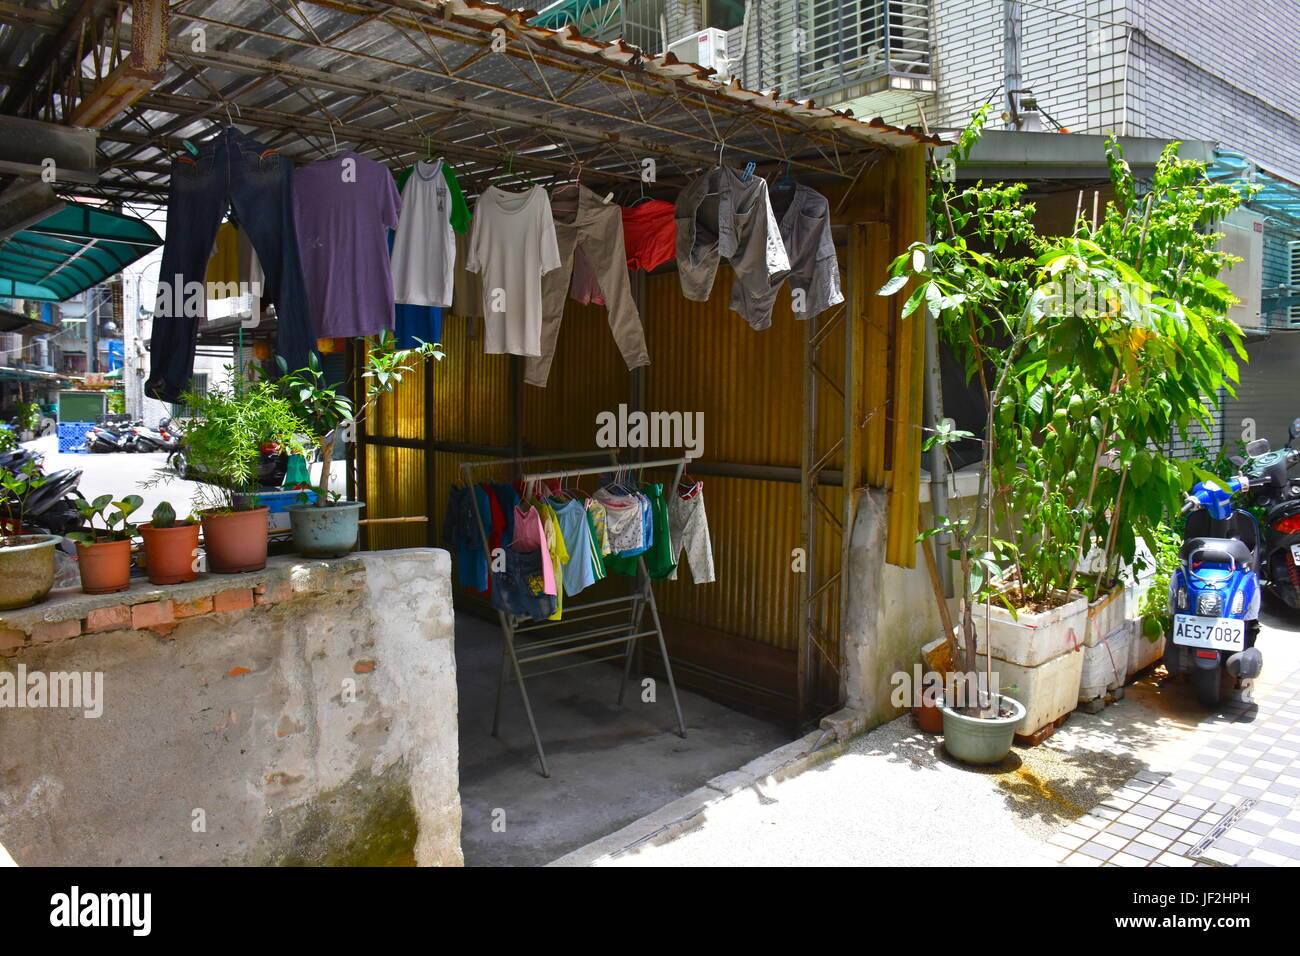 Wobei einige Kleidung hing zum Trocknen nach Hand gewaschen. Diese altmodische Art und Weise ist sehr beliebt in Taiwan, um Geld zu sparen. Stockfoto